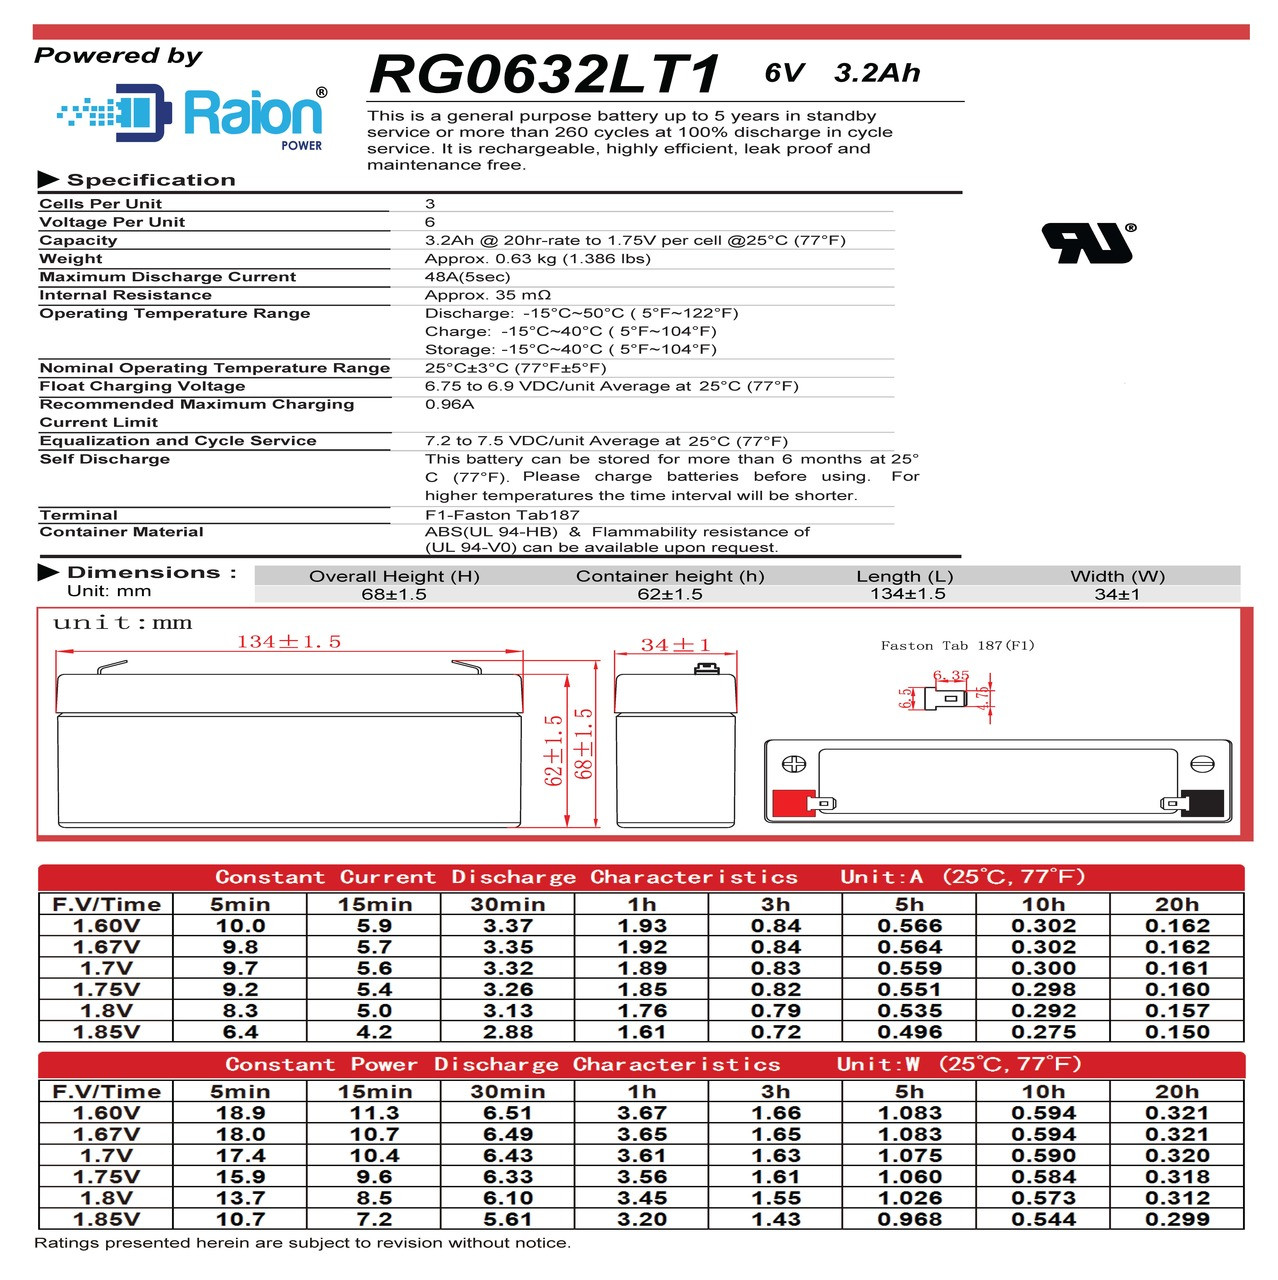 Raion Power RG0632LT1 6V 3.2Ah Battery Data Sheet for Health o meter 481 Scale